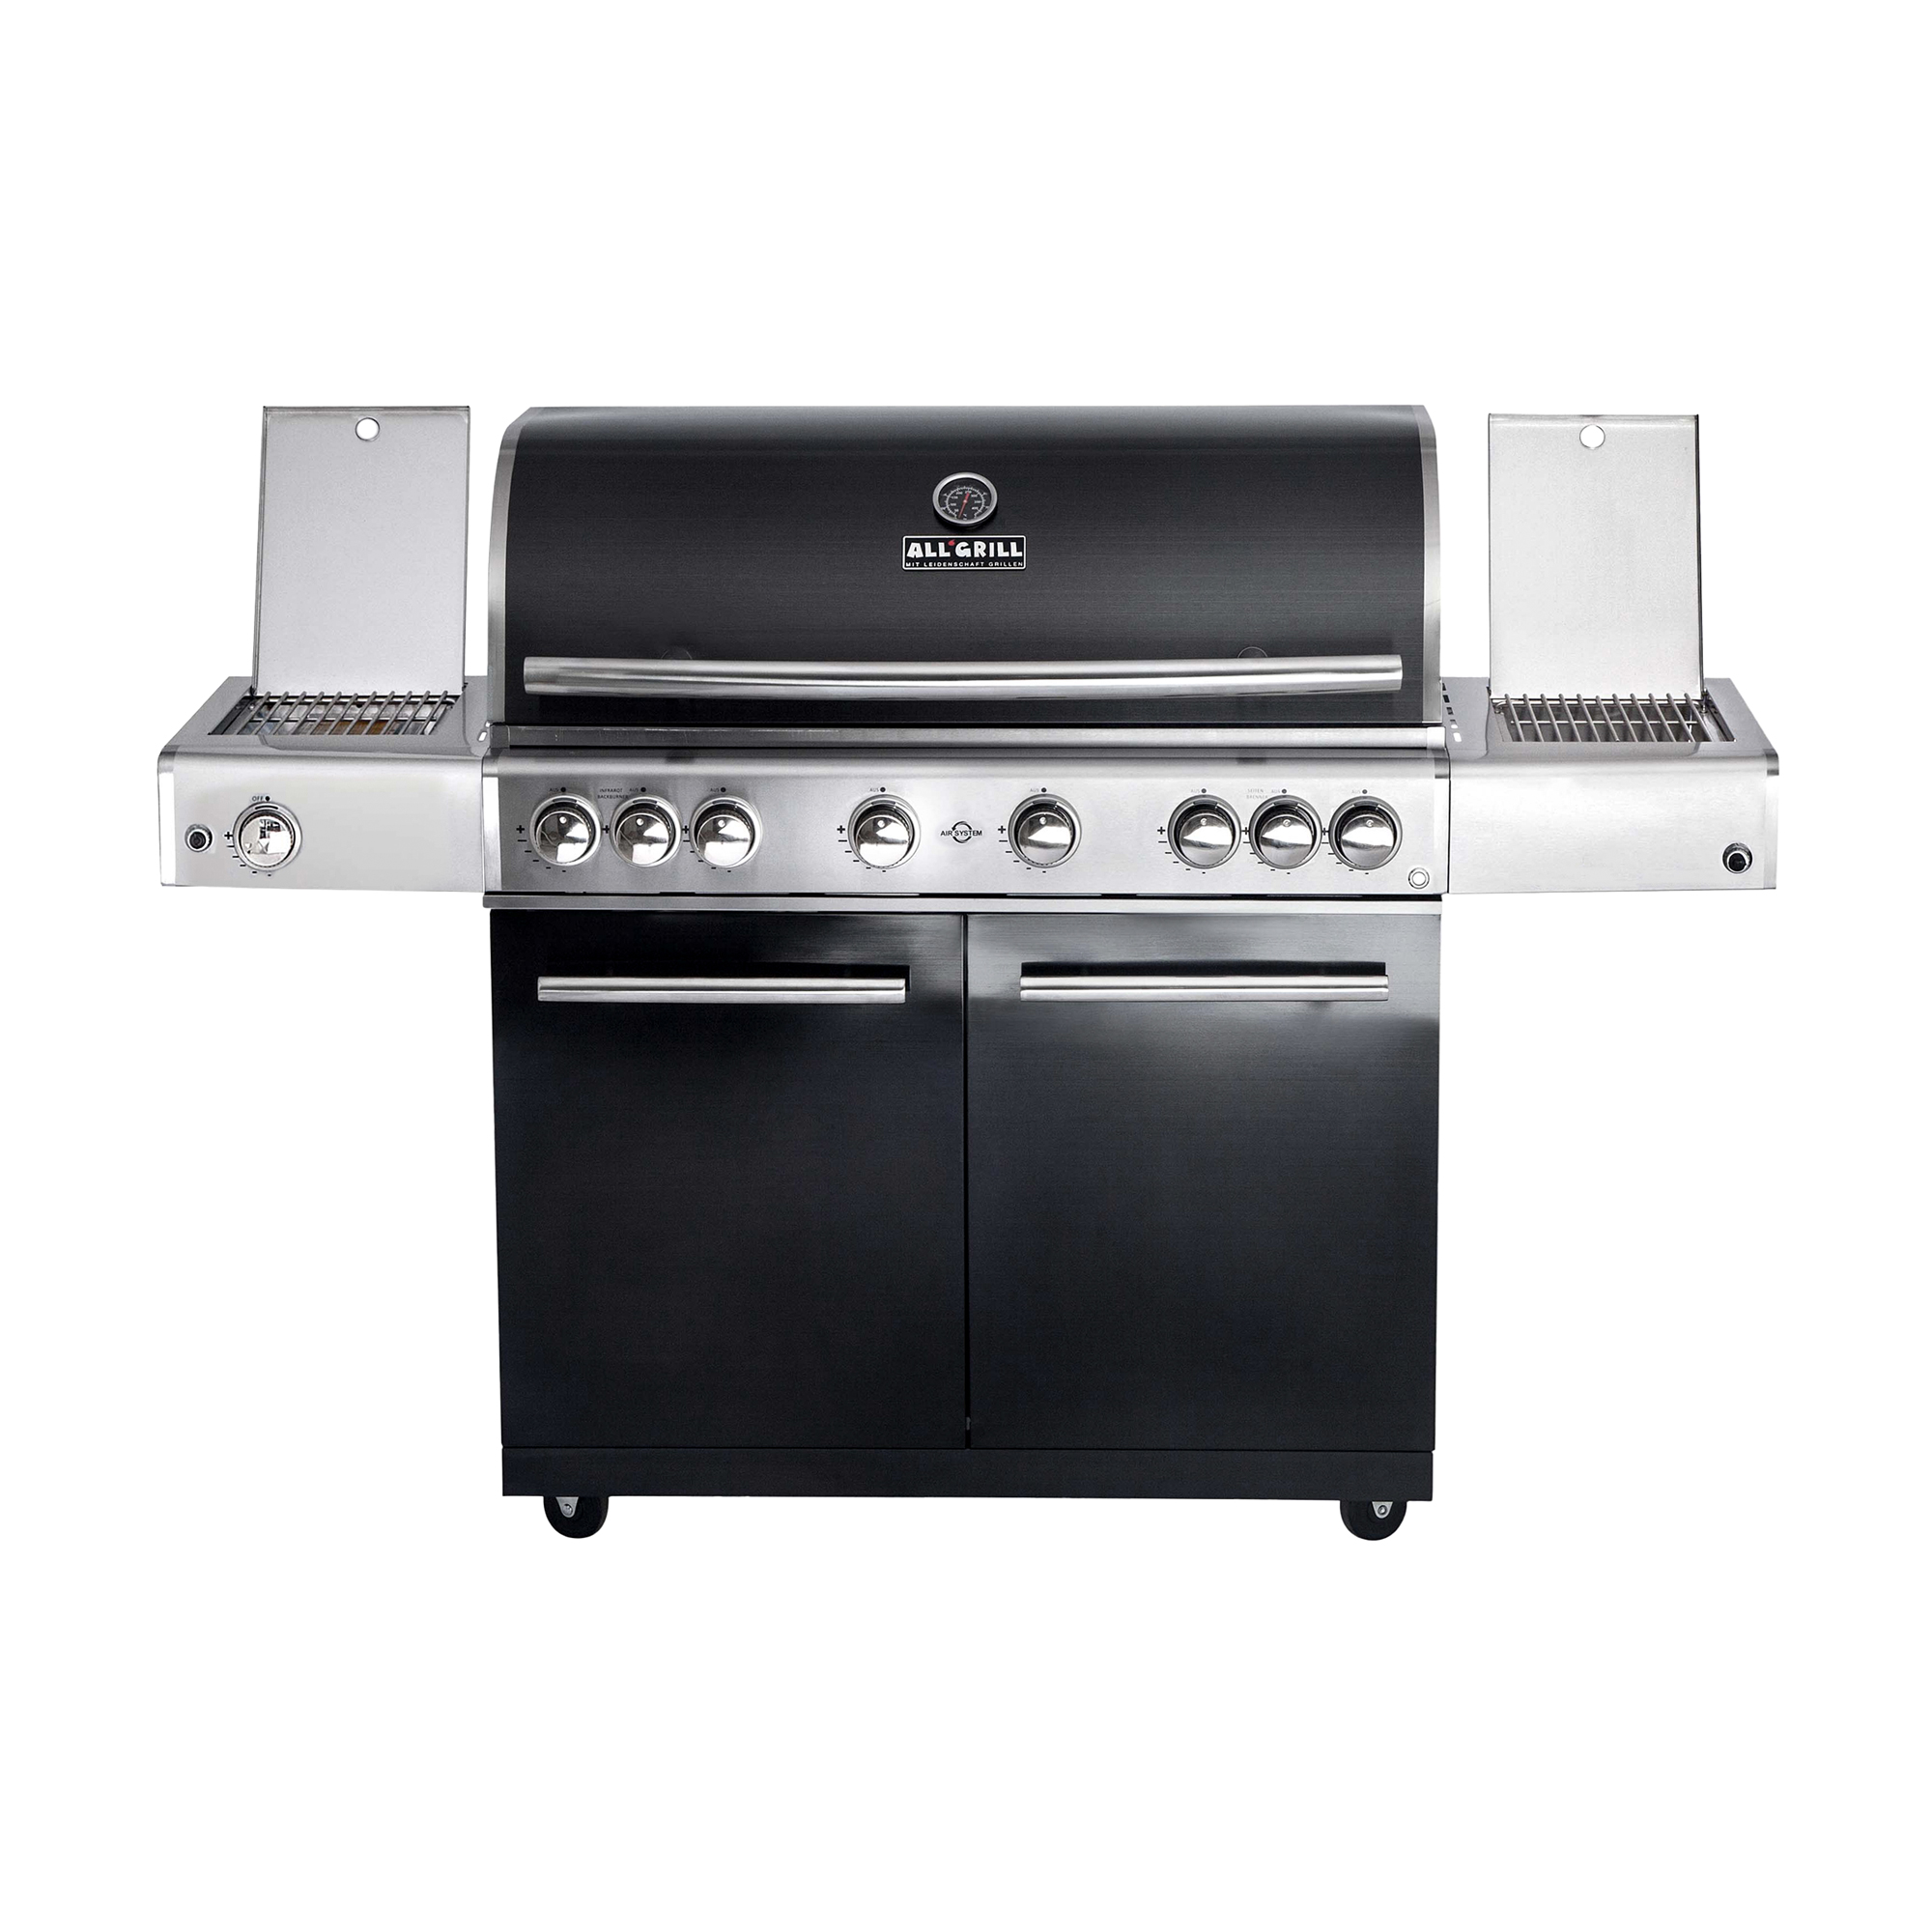 AllGrill® Chef Modular XL Black S2 (500706-S2) - All'Grill